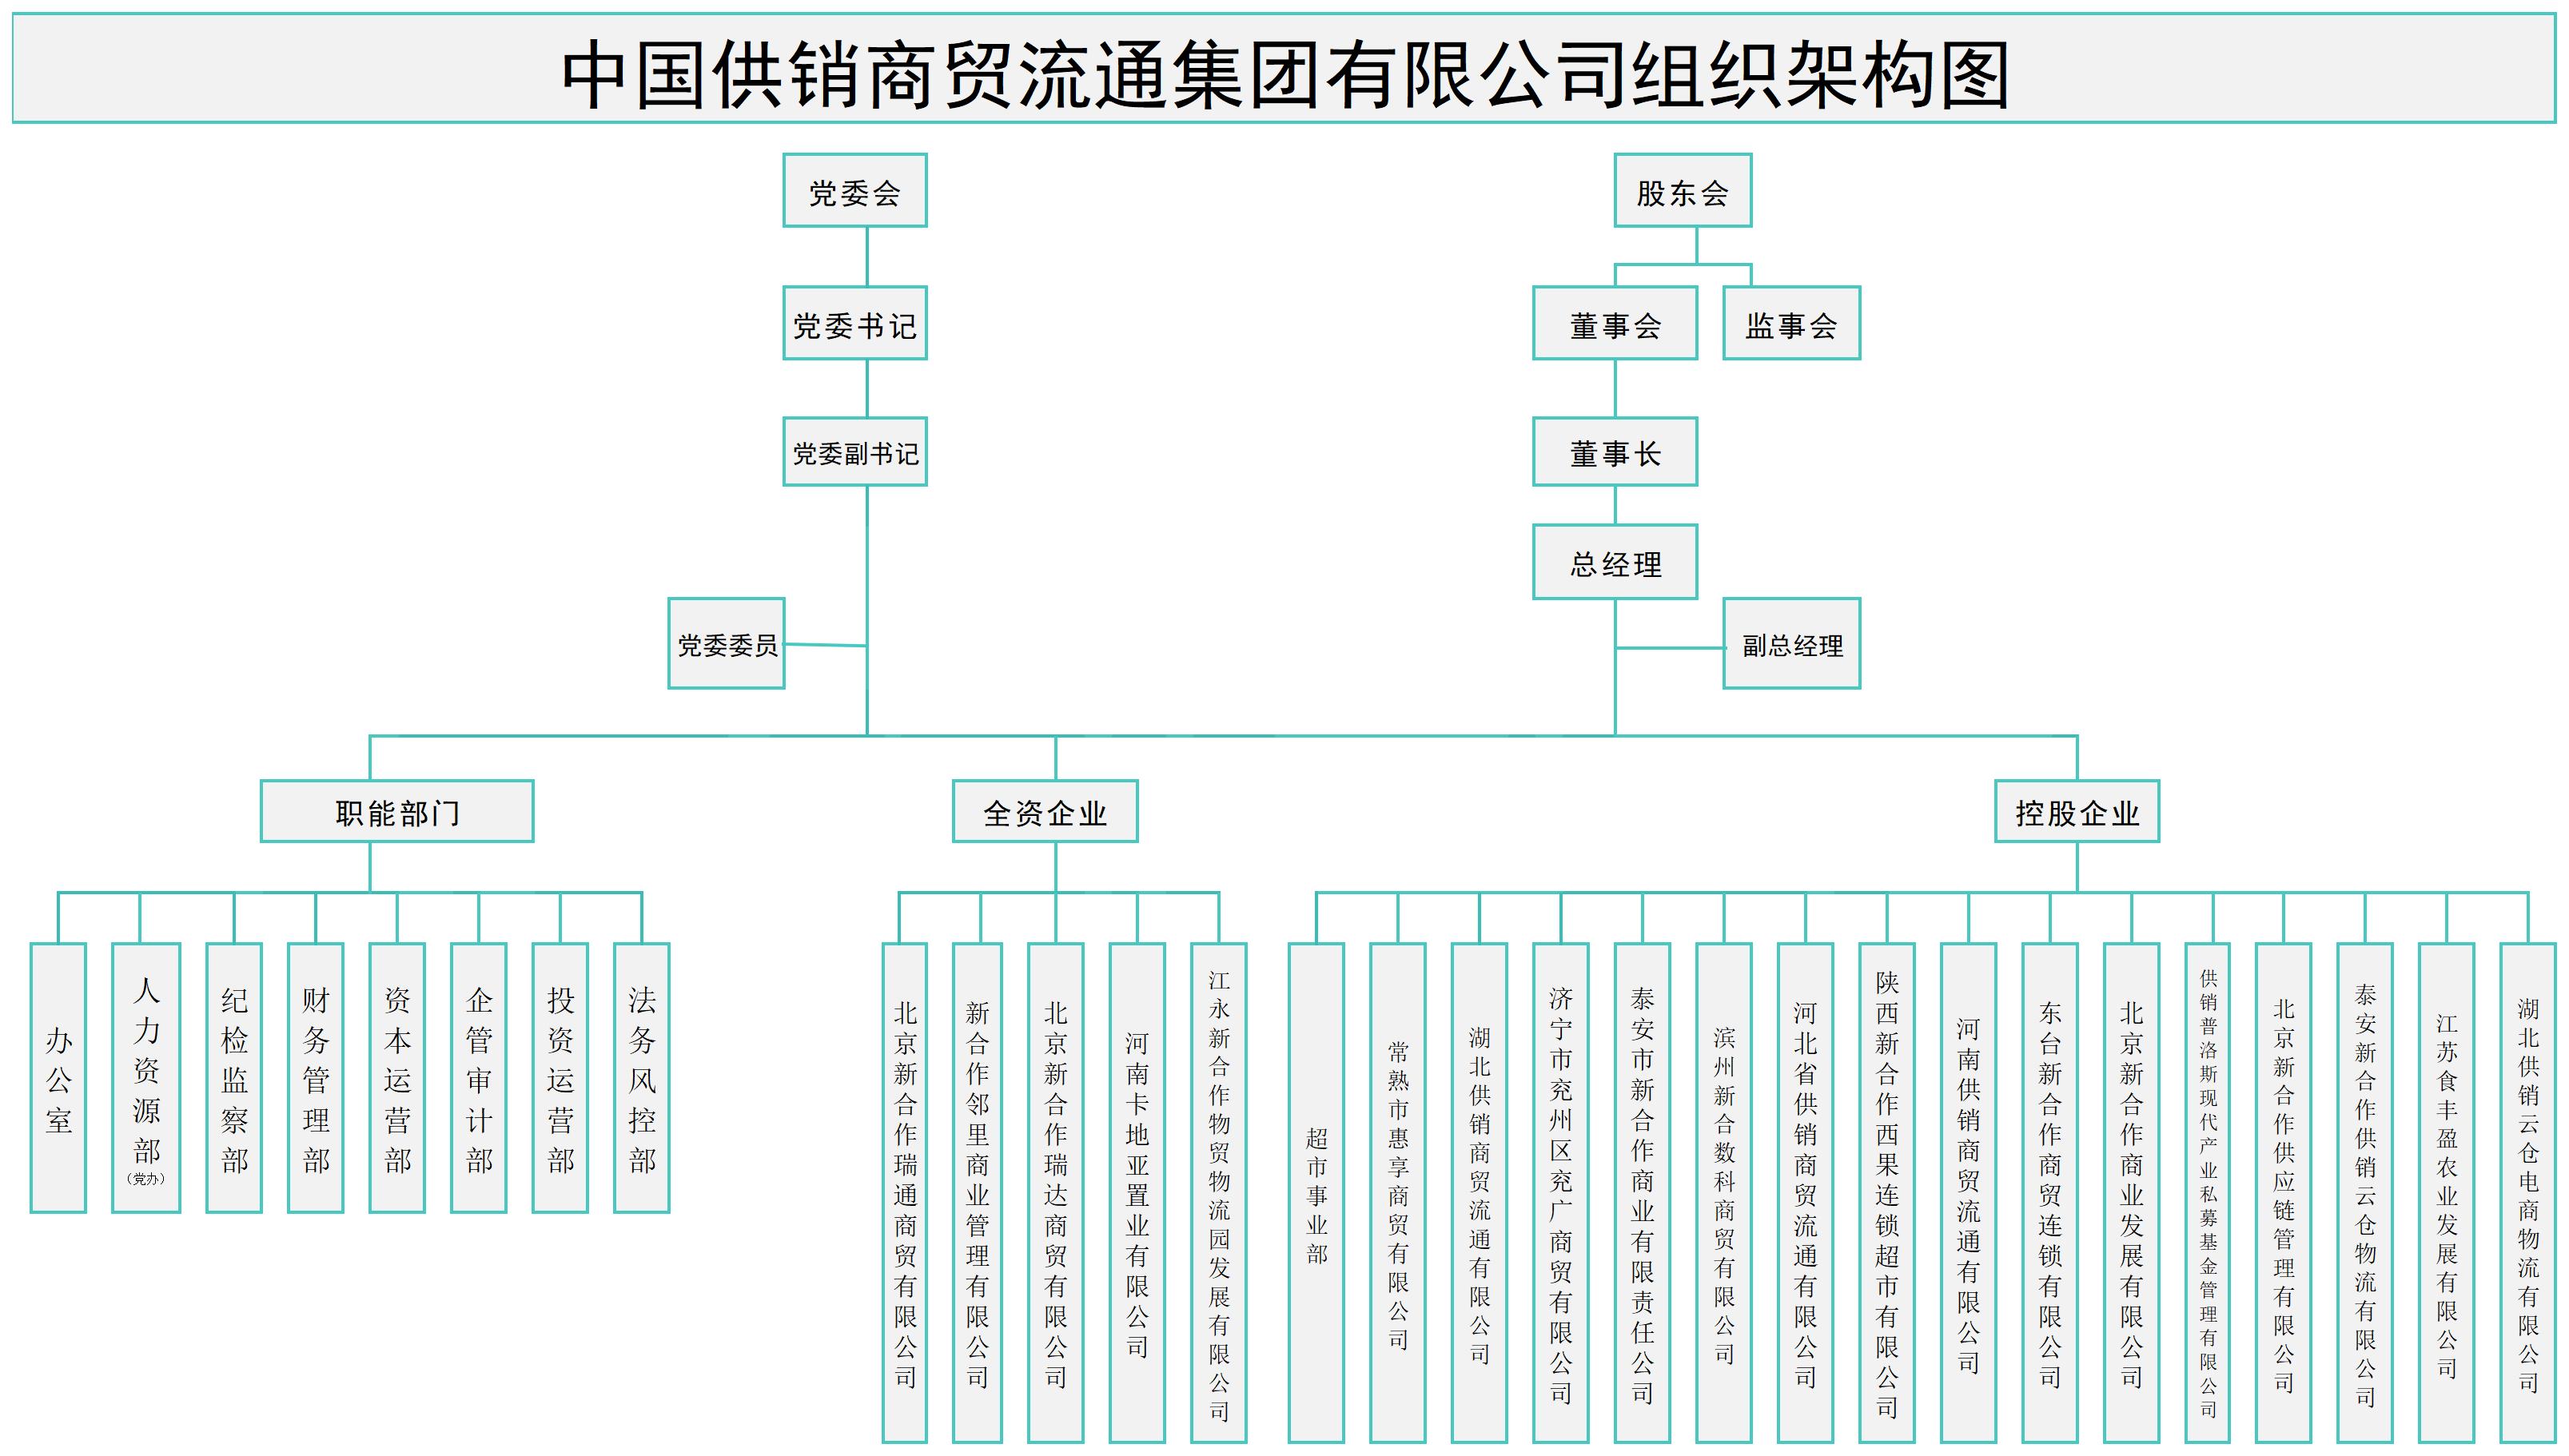 供销商贸集团（5.22）组织架构图1(2)_组织架构.jpg